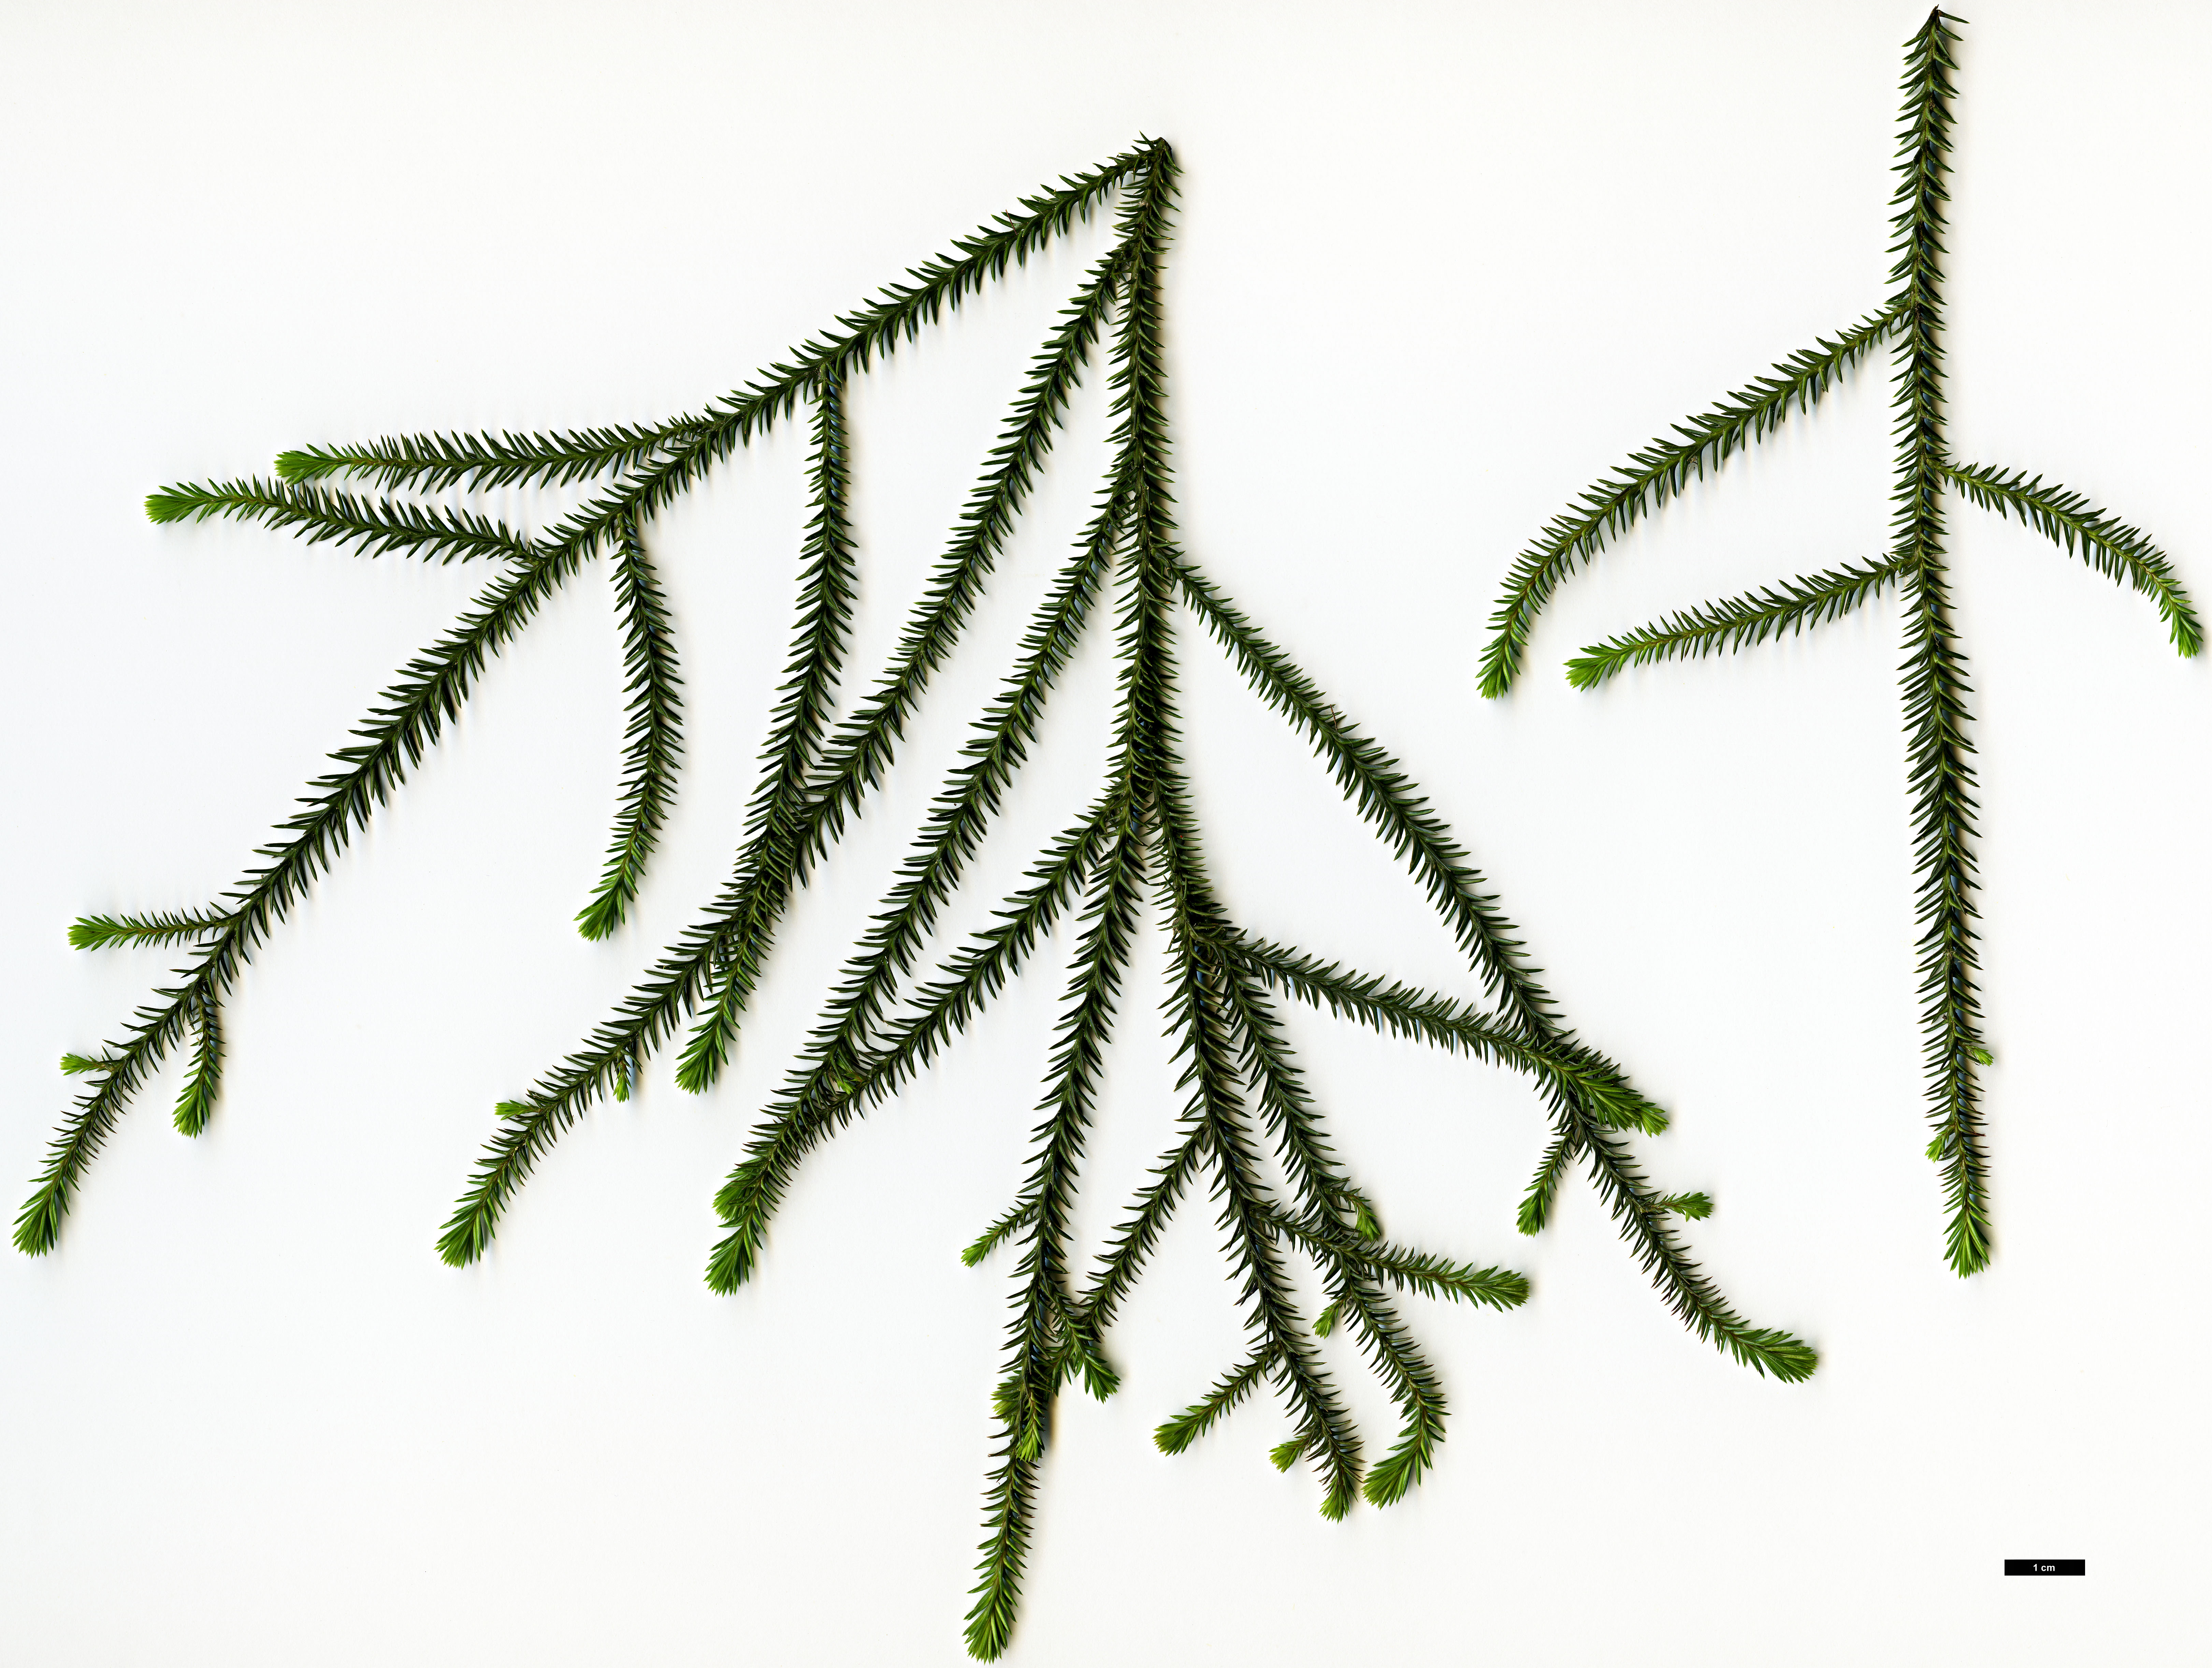 High resolution image: Family: Podocarpaceae - Genus: Dacrydium - Taxon: cupressinum